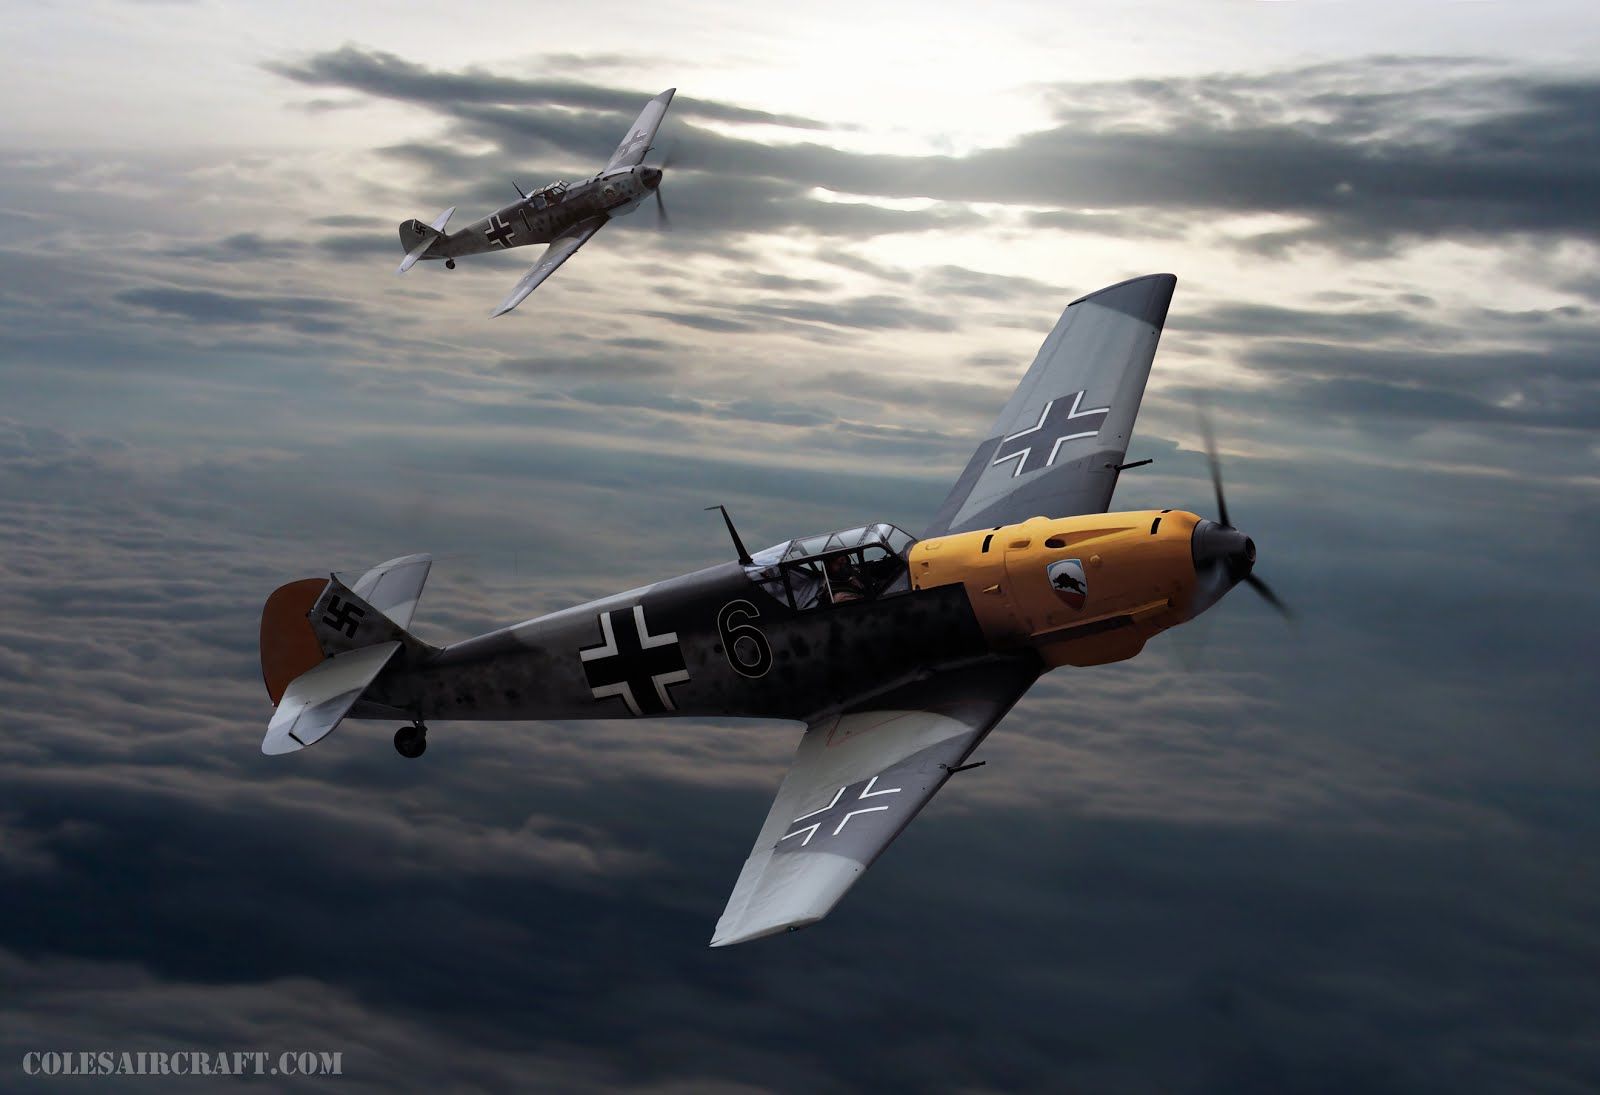 Messerschmitt Bf 109 wallpaper, Military, HQ Messerschmitt Bf 109 pictureK Wallpaper 2019